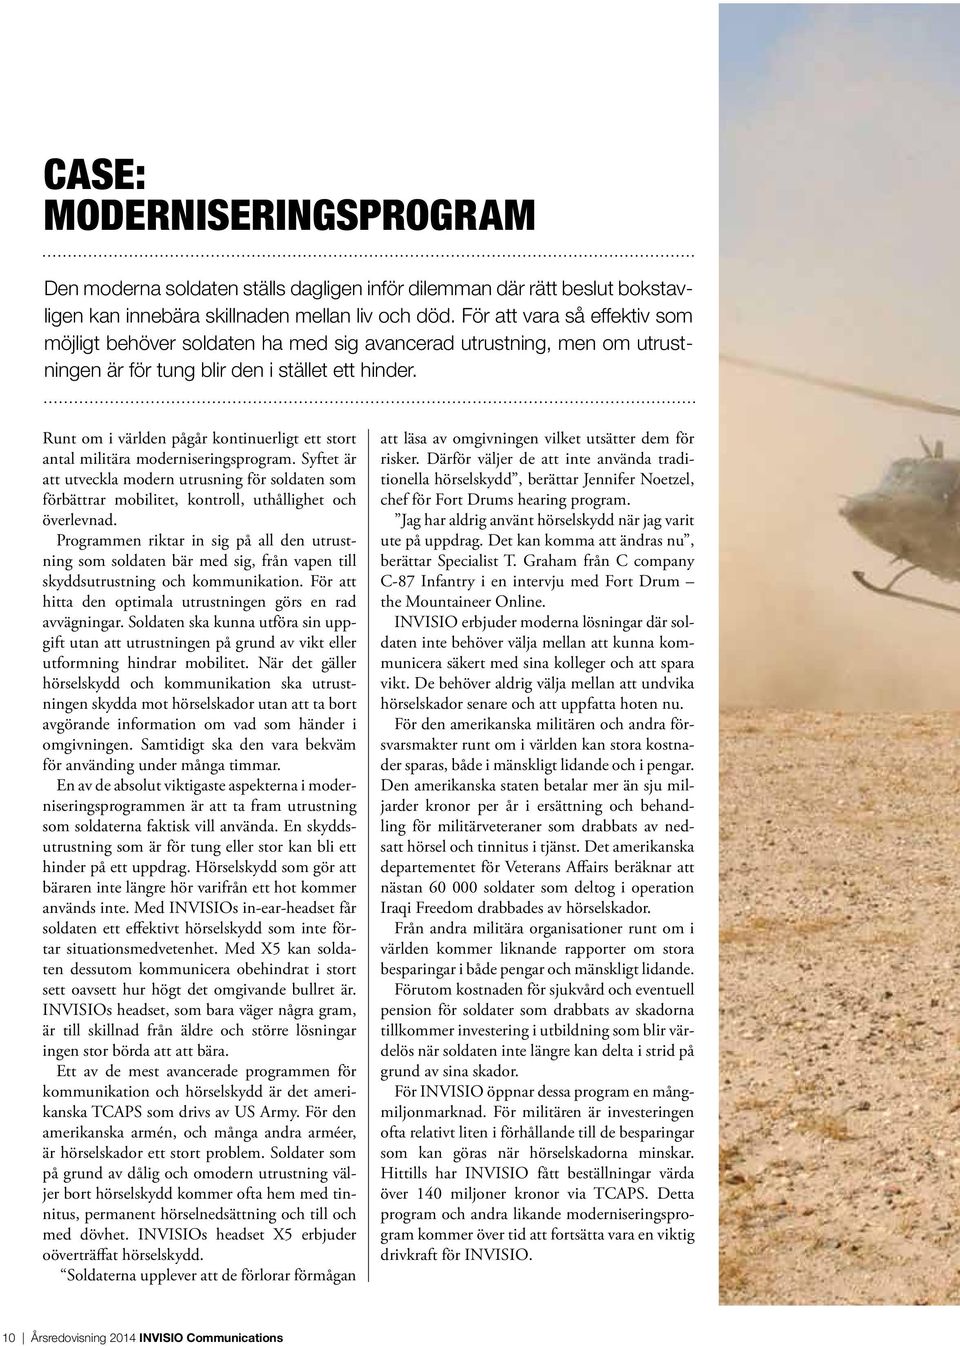 Runt om i världen pågår kontinuerligt ett stort antal militära moderniseringsprogram.